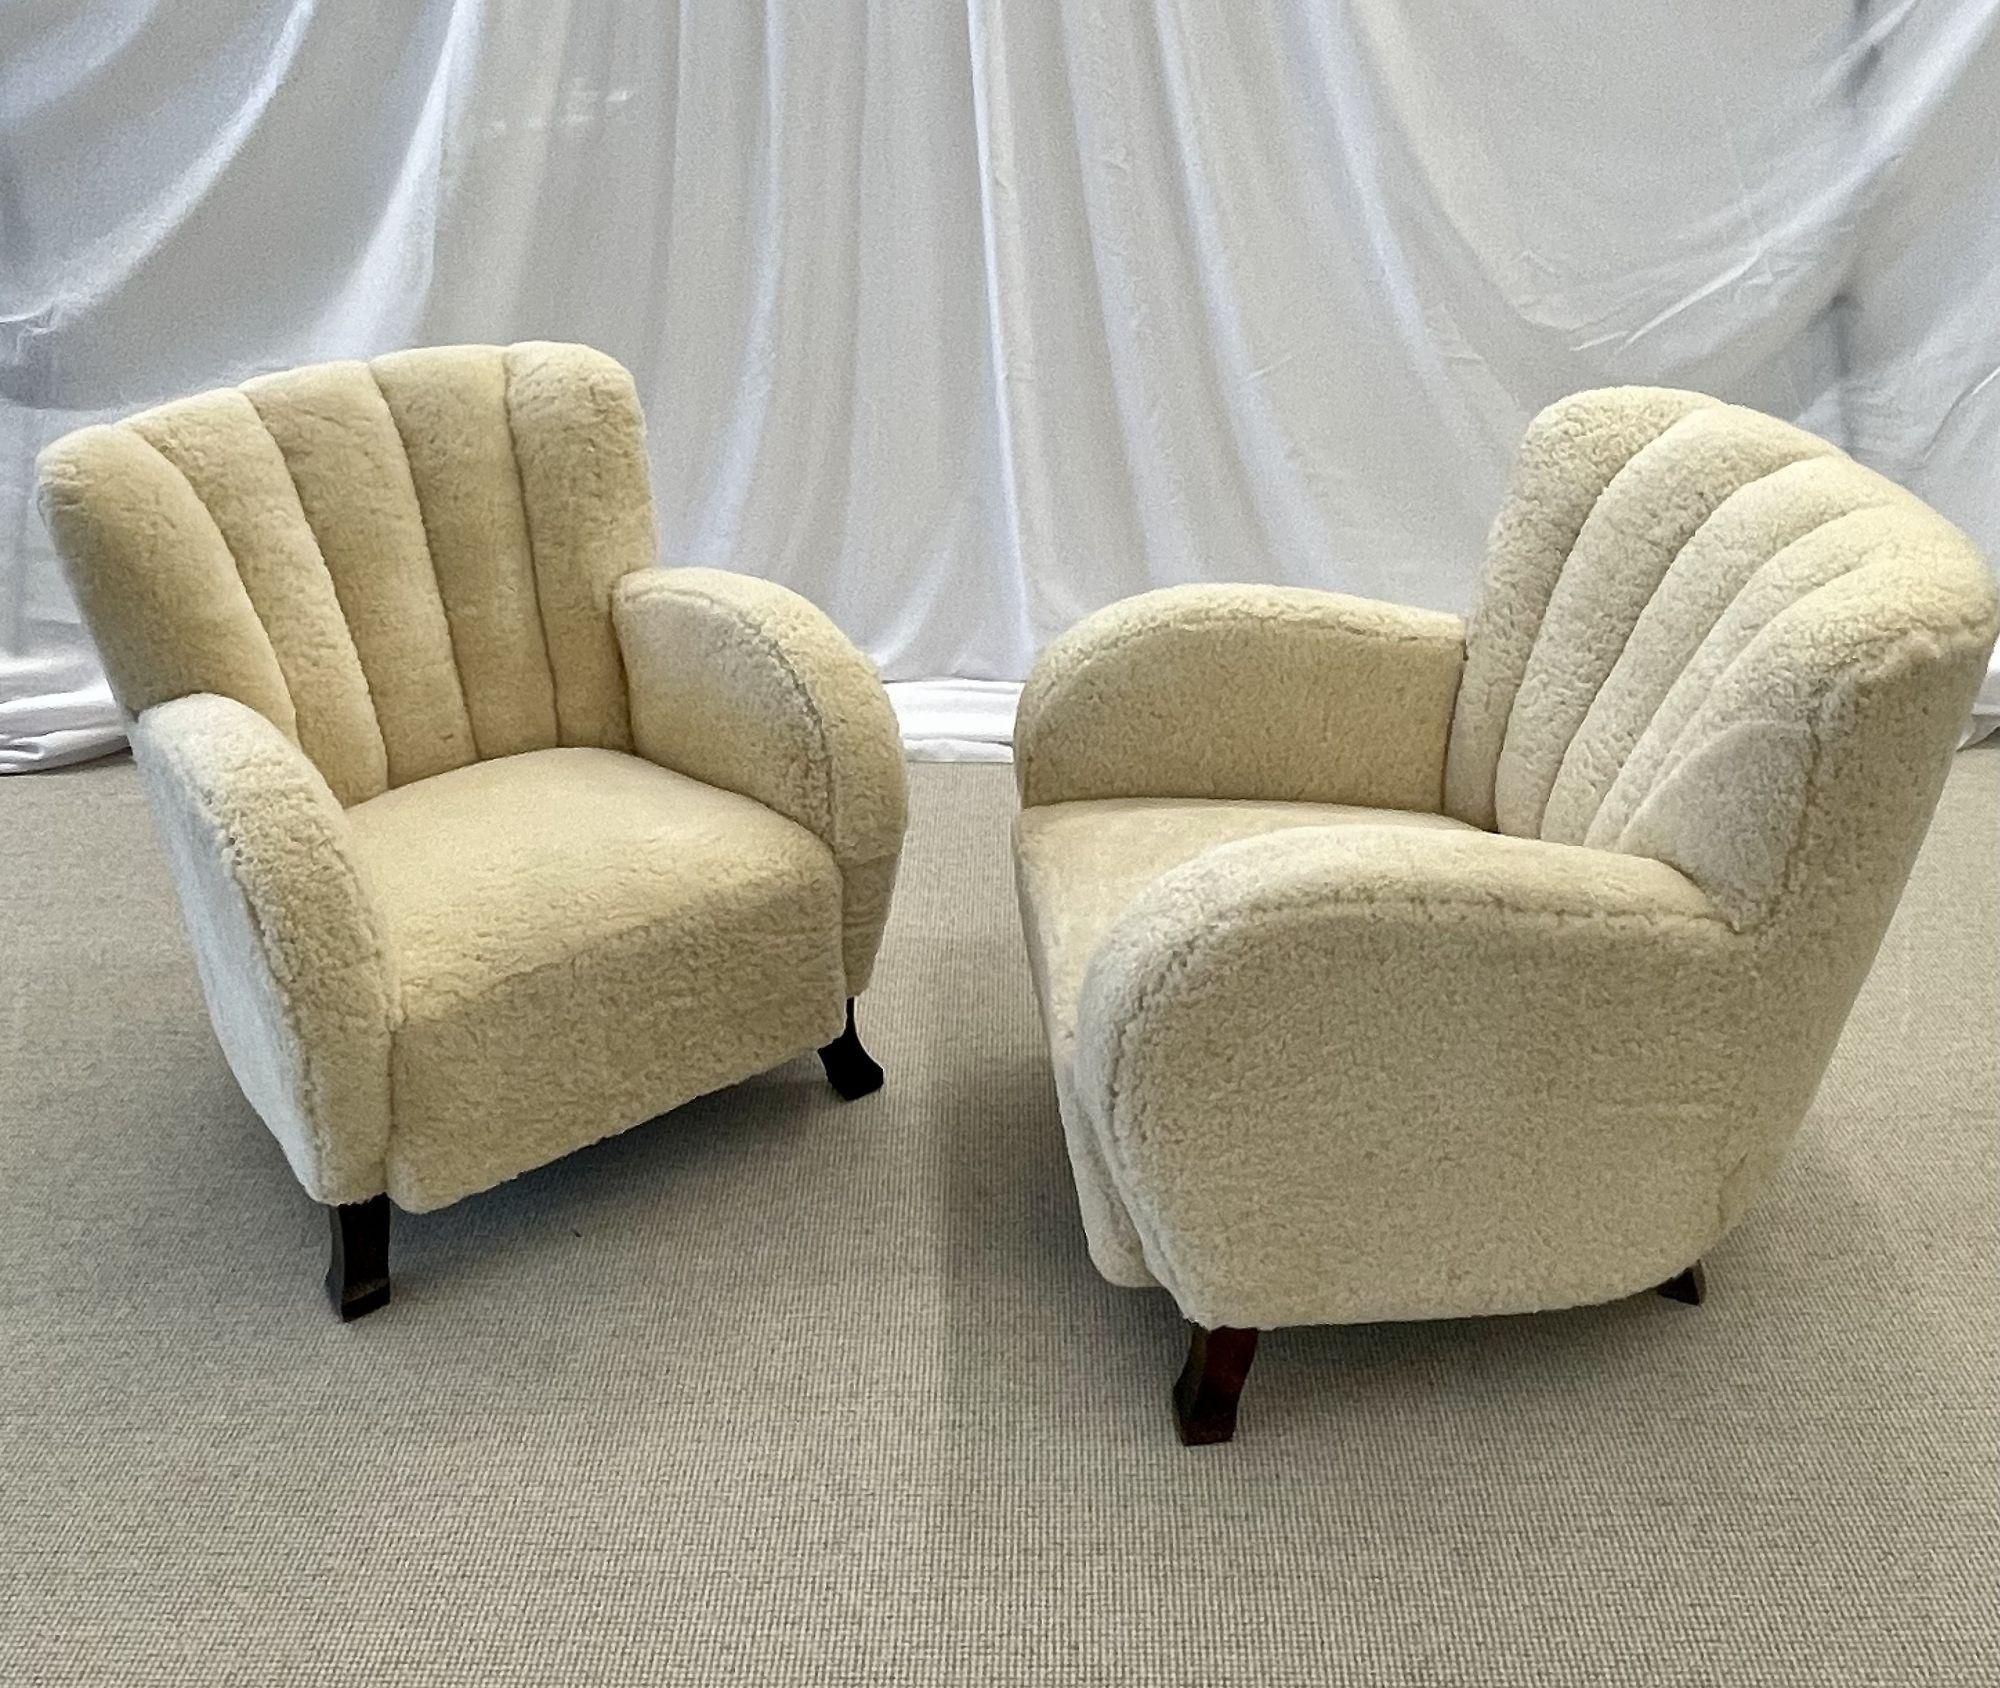 Schwedische Loungesessel der Jahrhundertmitte, Art Deco, beigefarbenes Lammfell, Holz, 1930er Jahre

Schickes Paar Art-Déco-Sessel in organischer Form, entworfen und hergestellt in Schweden um 1930. Dieses atemberaubende Paar Sessel im Stil von